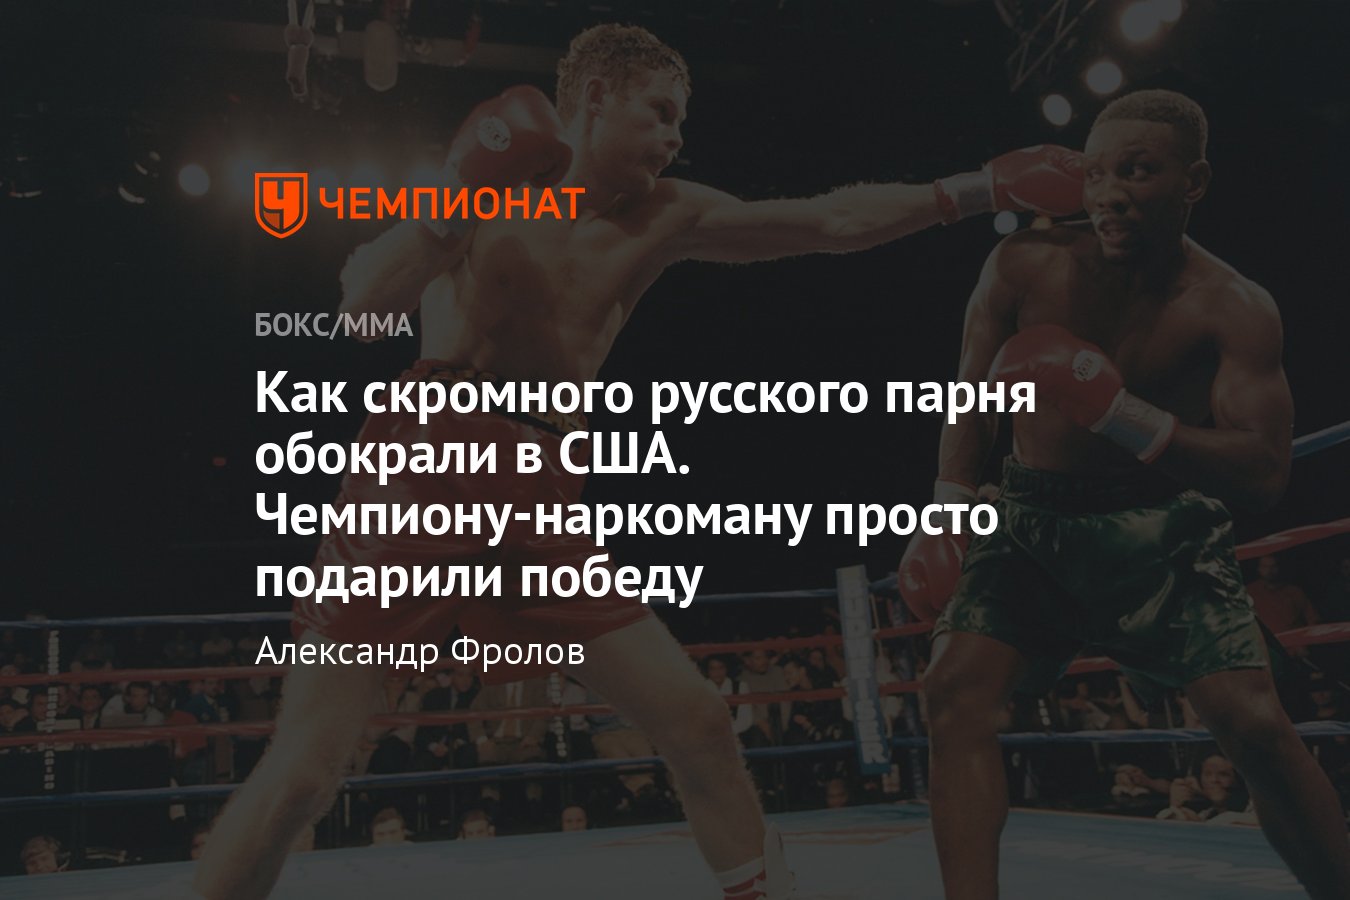 Андрей Пестряев — Пернелл Уитакер, российский бокс, бой в США - Чемпионат